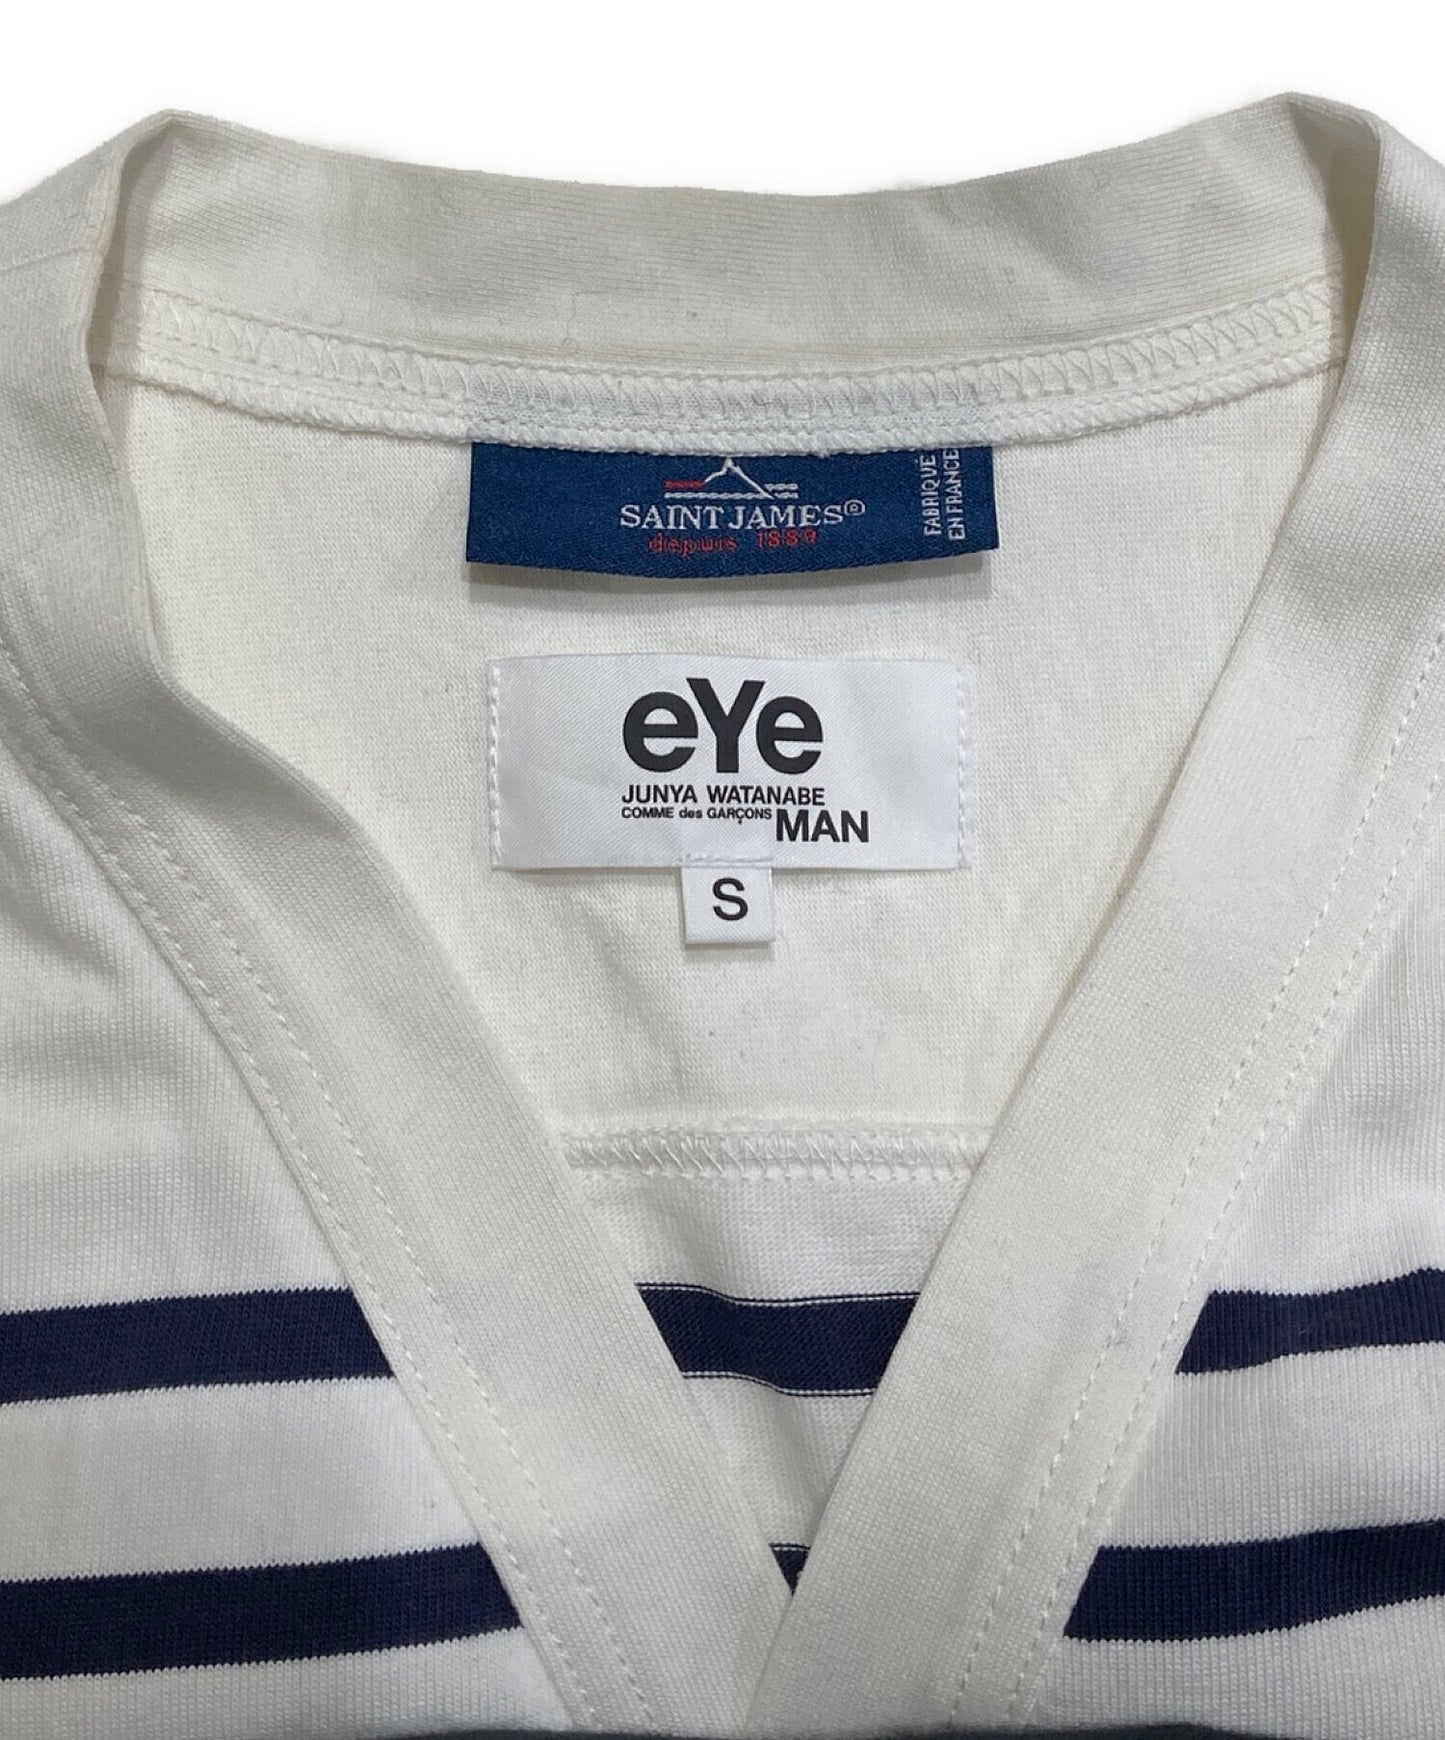 Eye Comme des Garcons Junyawatanabe Man Cotton Striped Cardigan We-T901